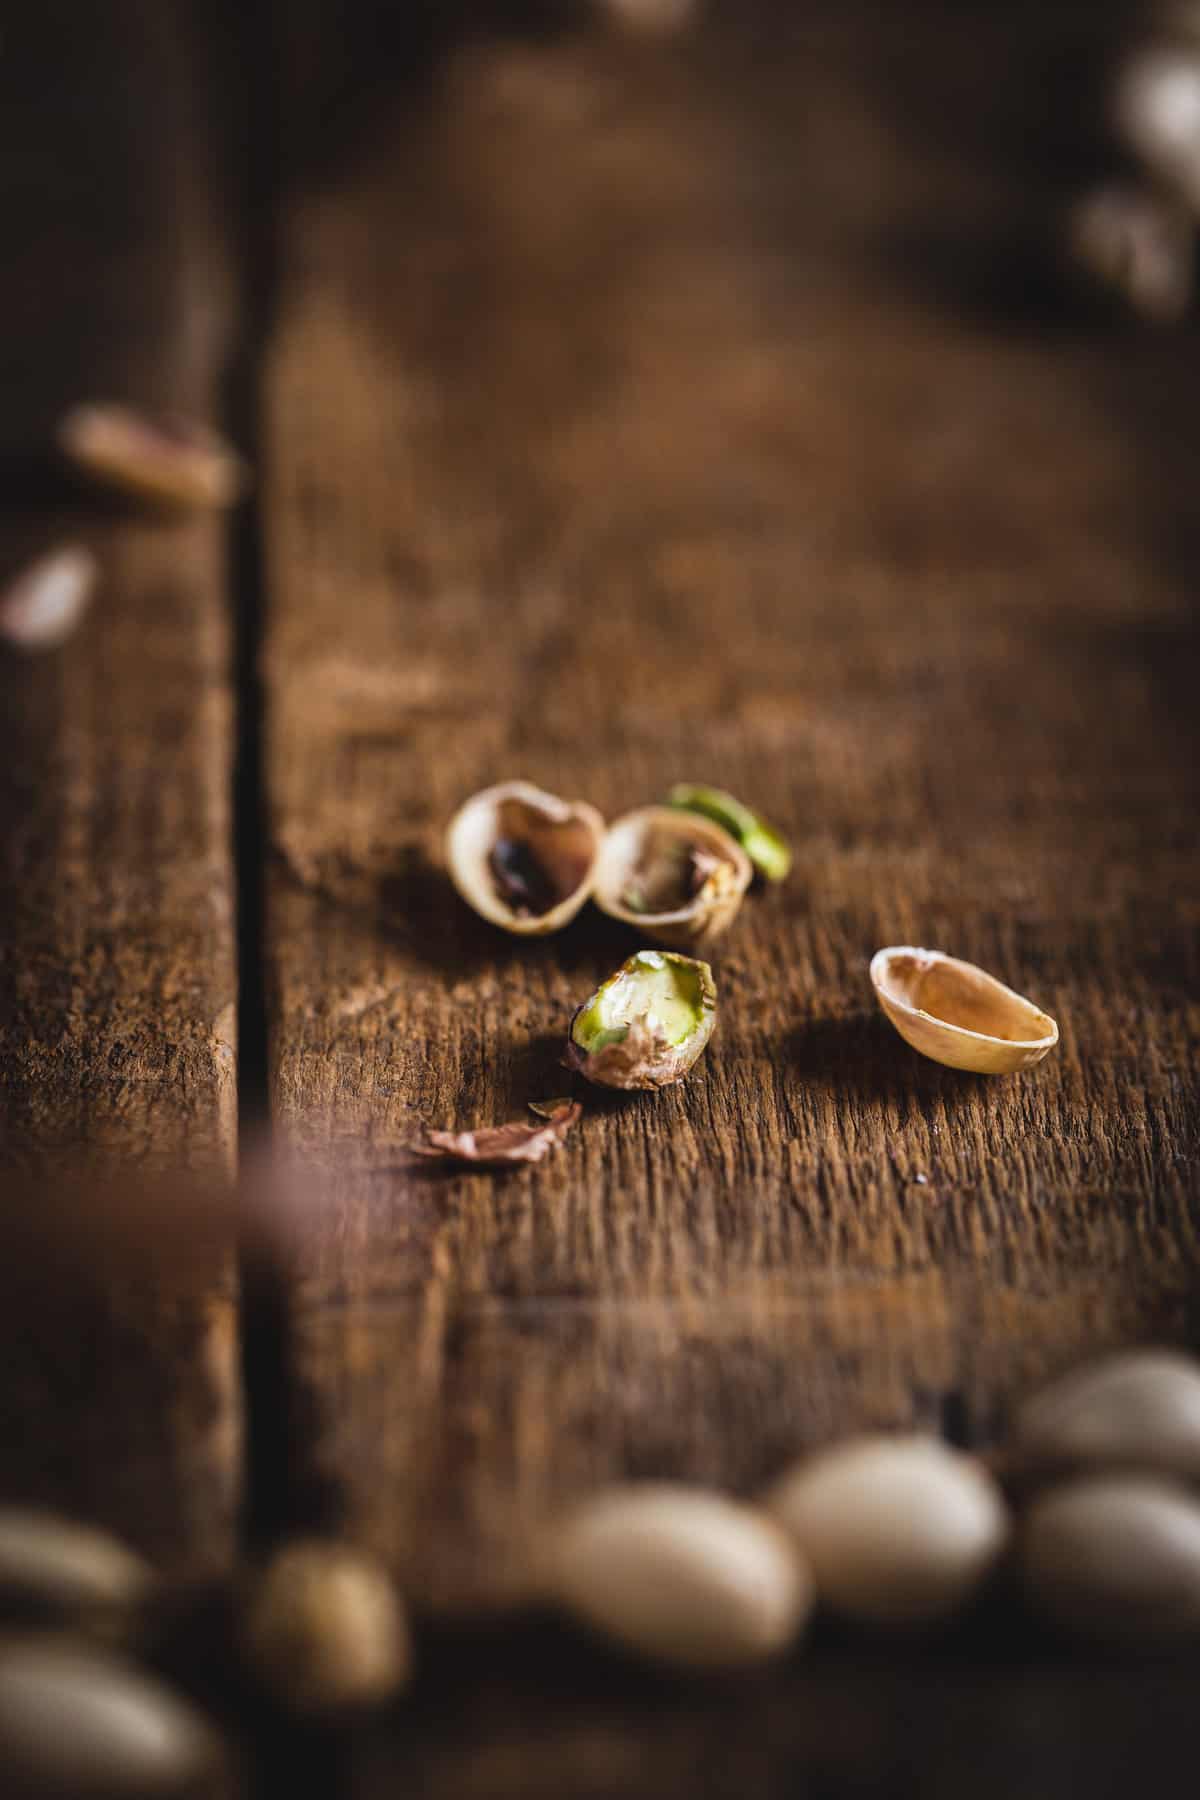 shelled pistachio close up